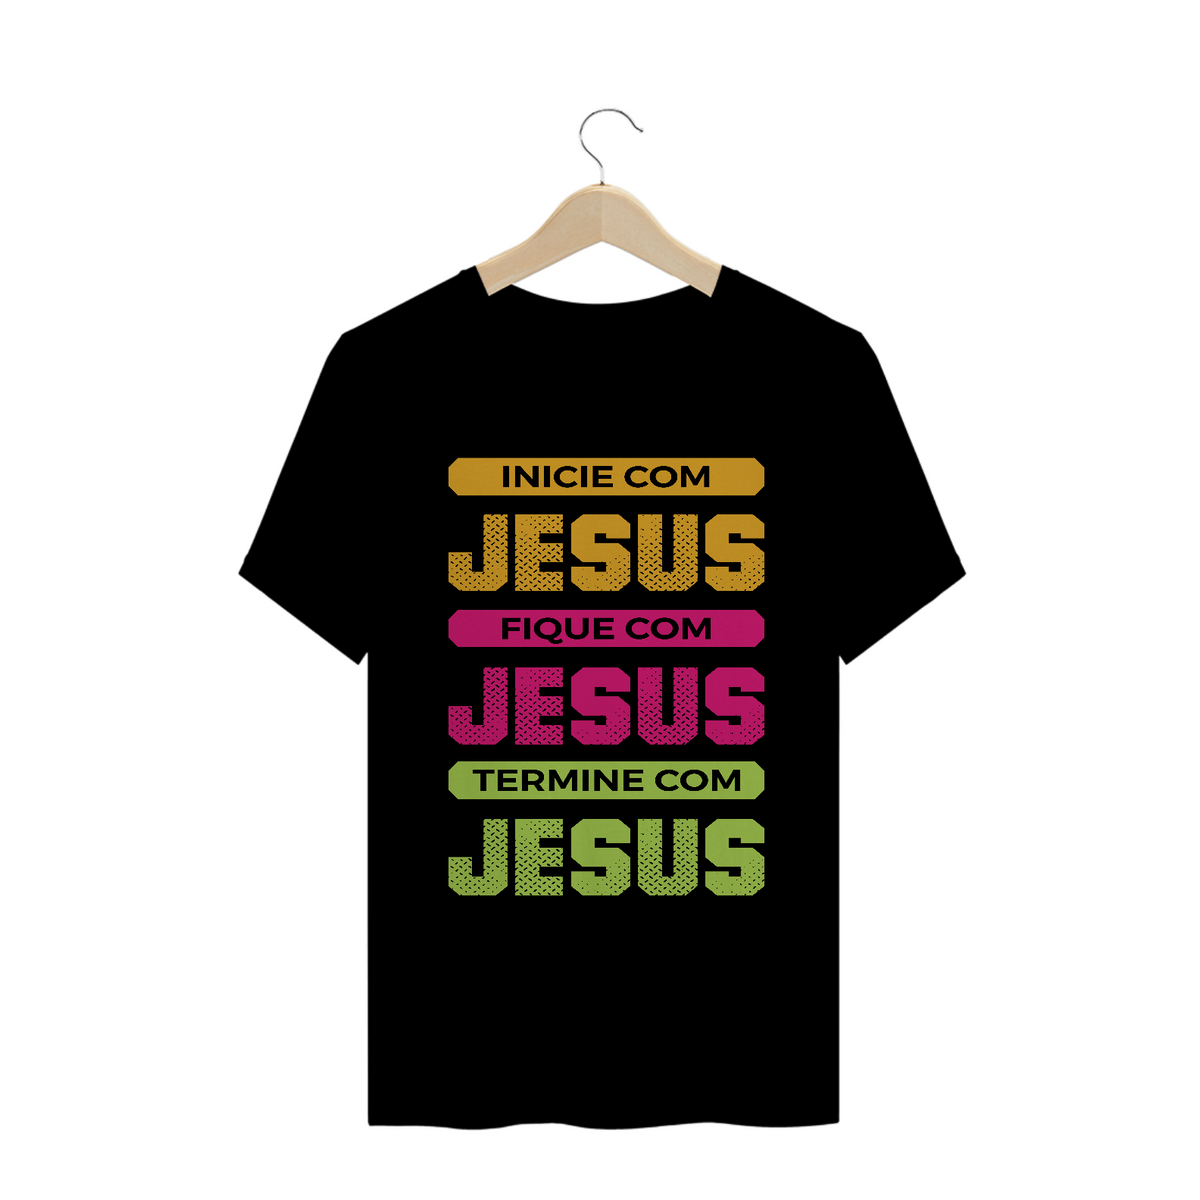 Nome do produto: Camiseta Jesus do Inicio ao Fim